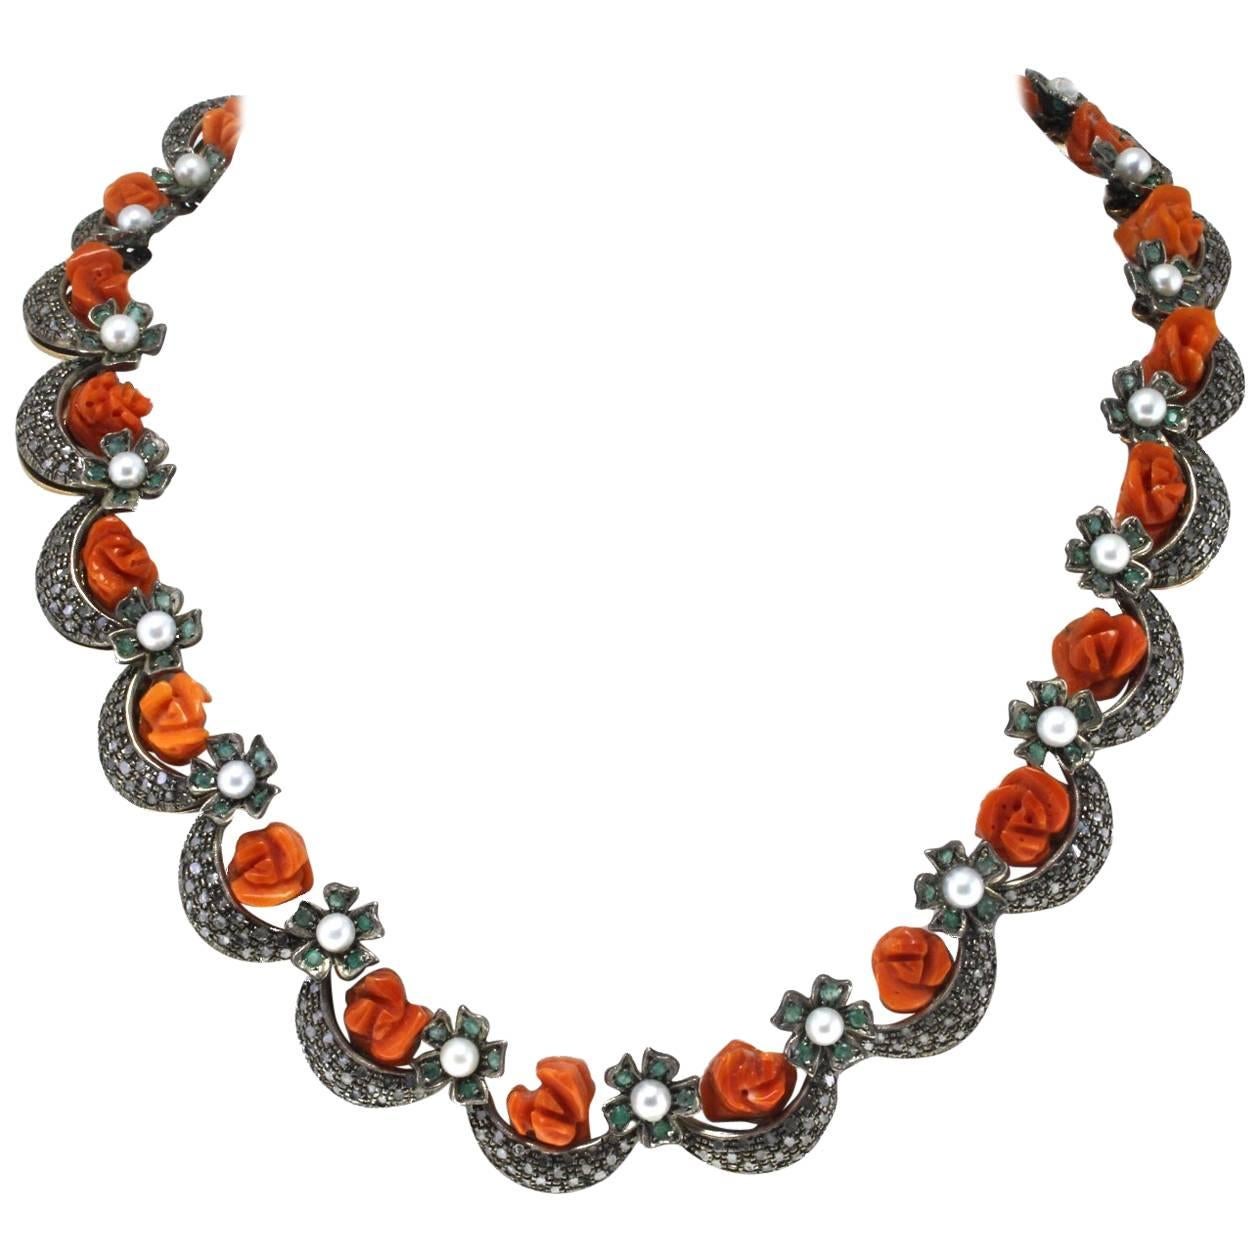  Halskette aus Silber und Gold mit kleinen Perlen, roten Korallenblumen, Smaragden, Diamanten